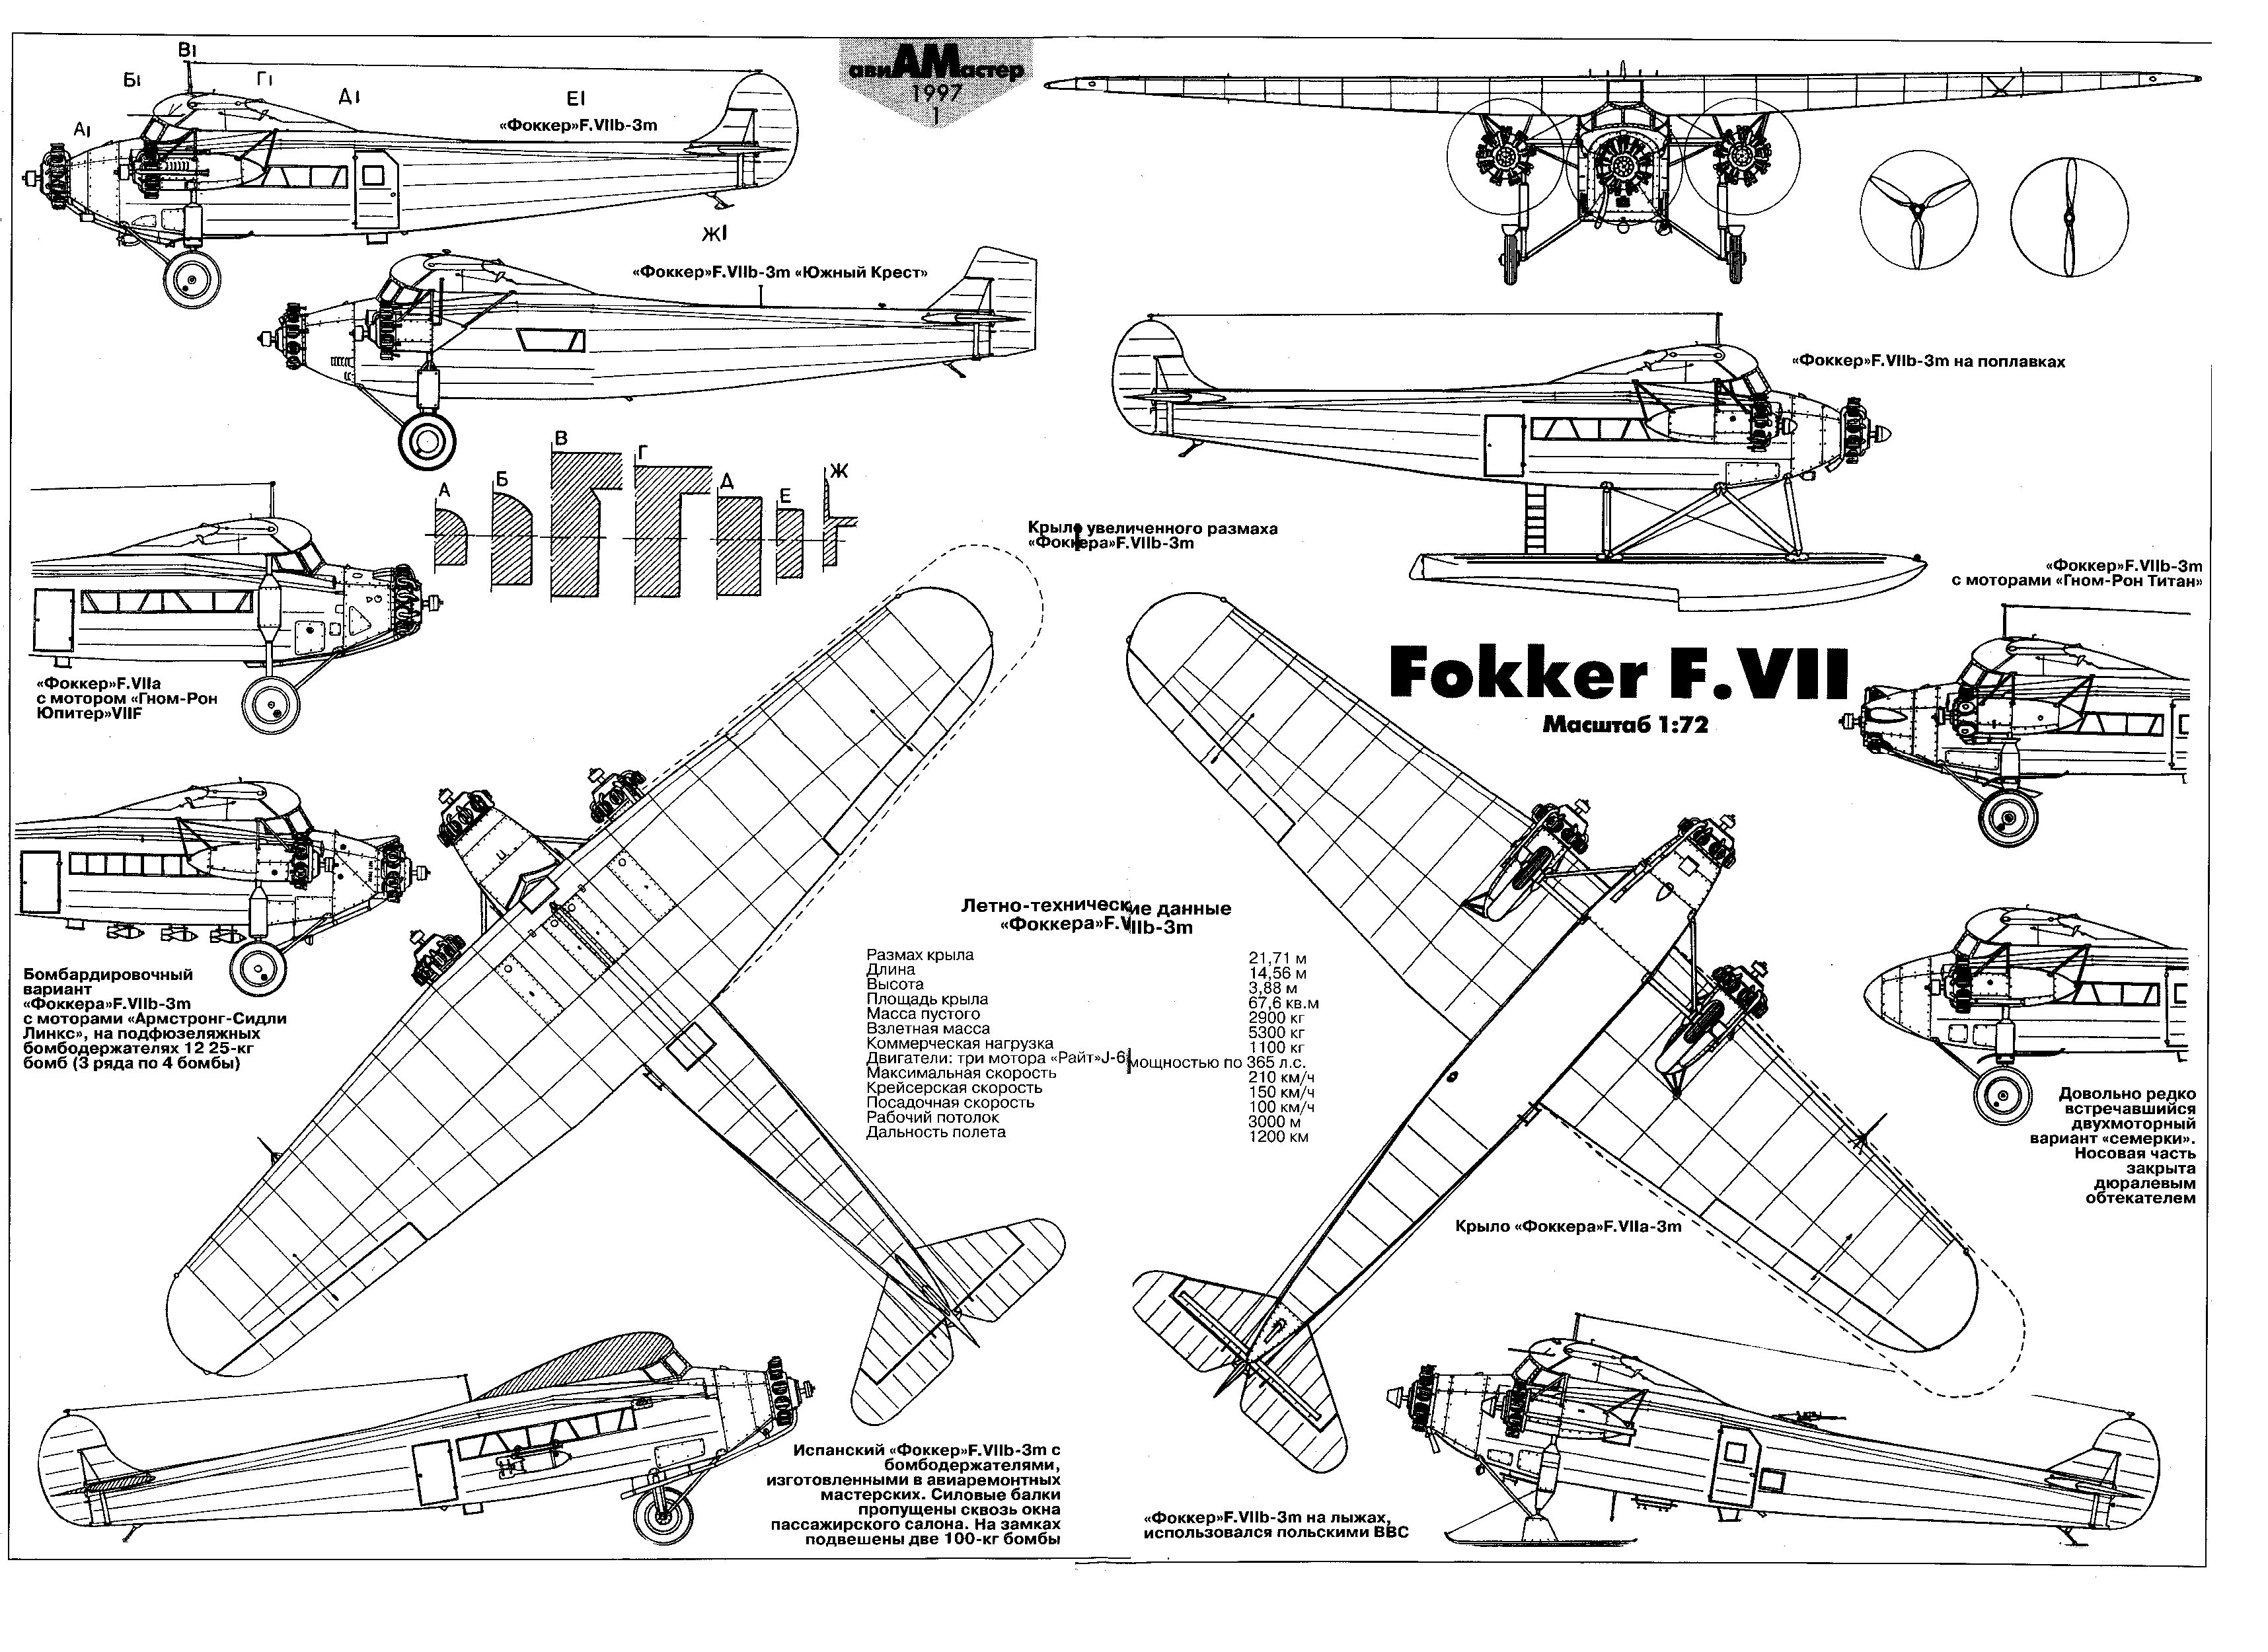 Fokker F.VII blueprint